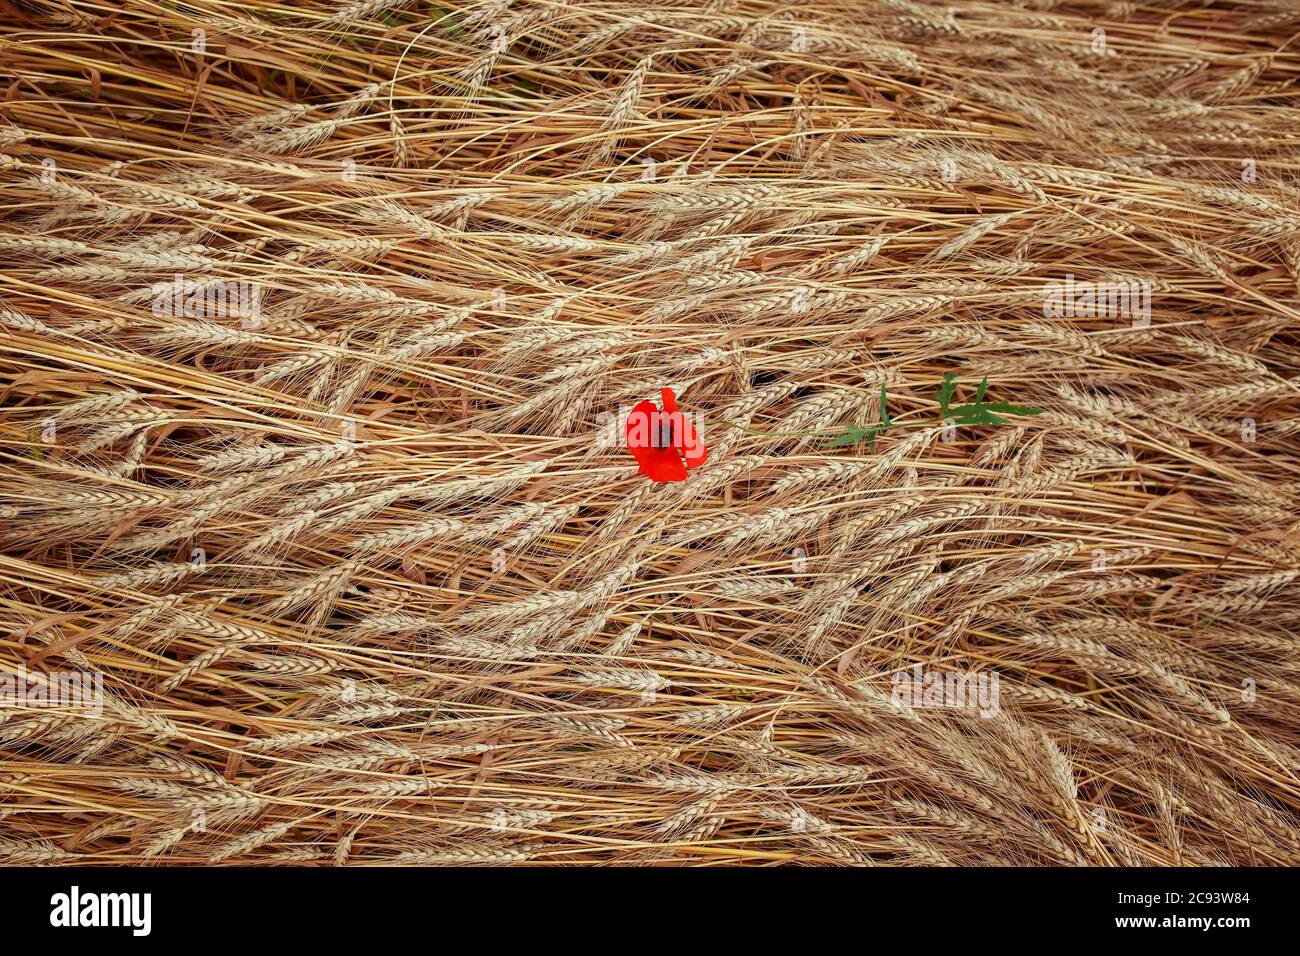 Fondo natural vista superior de las orejas de trigo de oro y flores de amapola roja Foto de stock